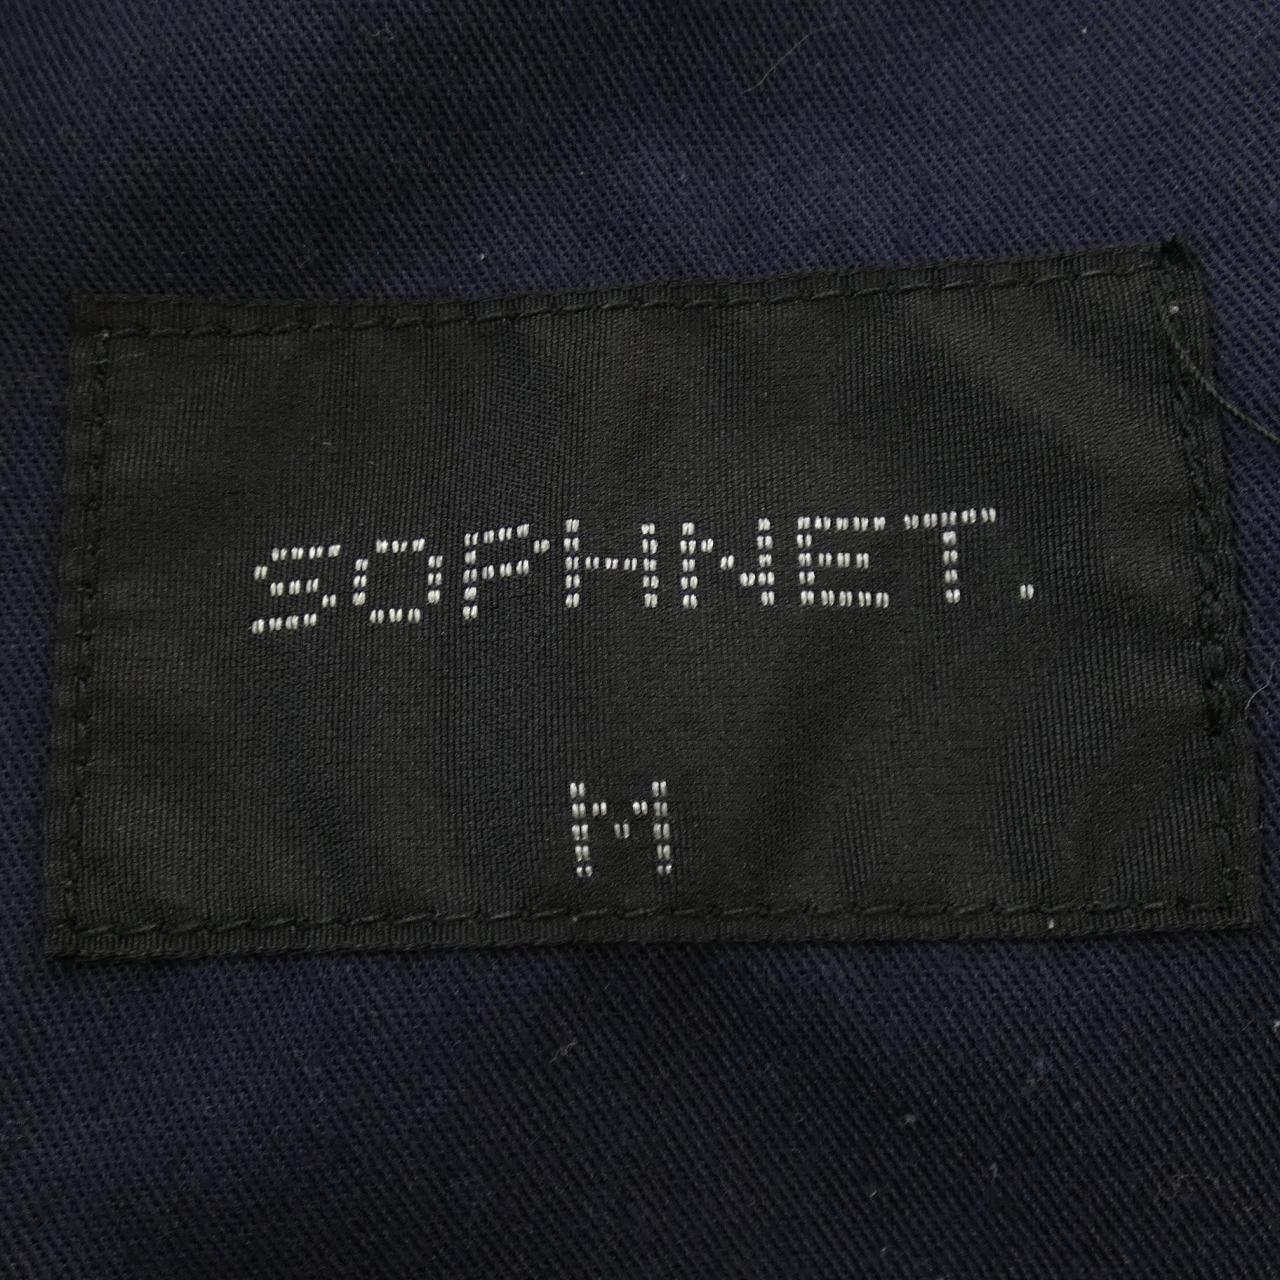 ソフネット SOPHNET パンツ